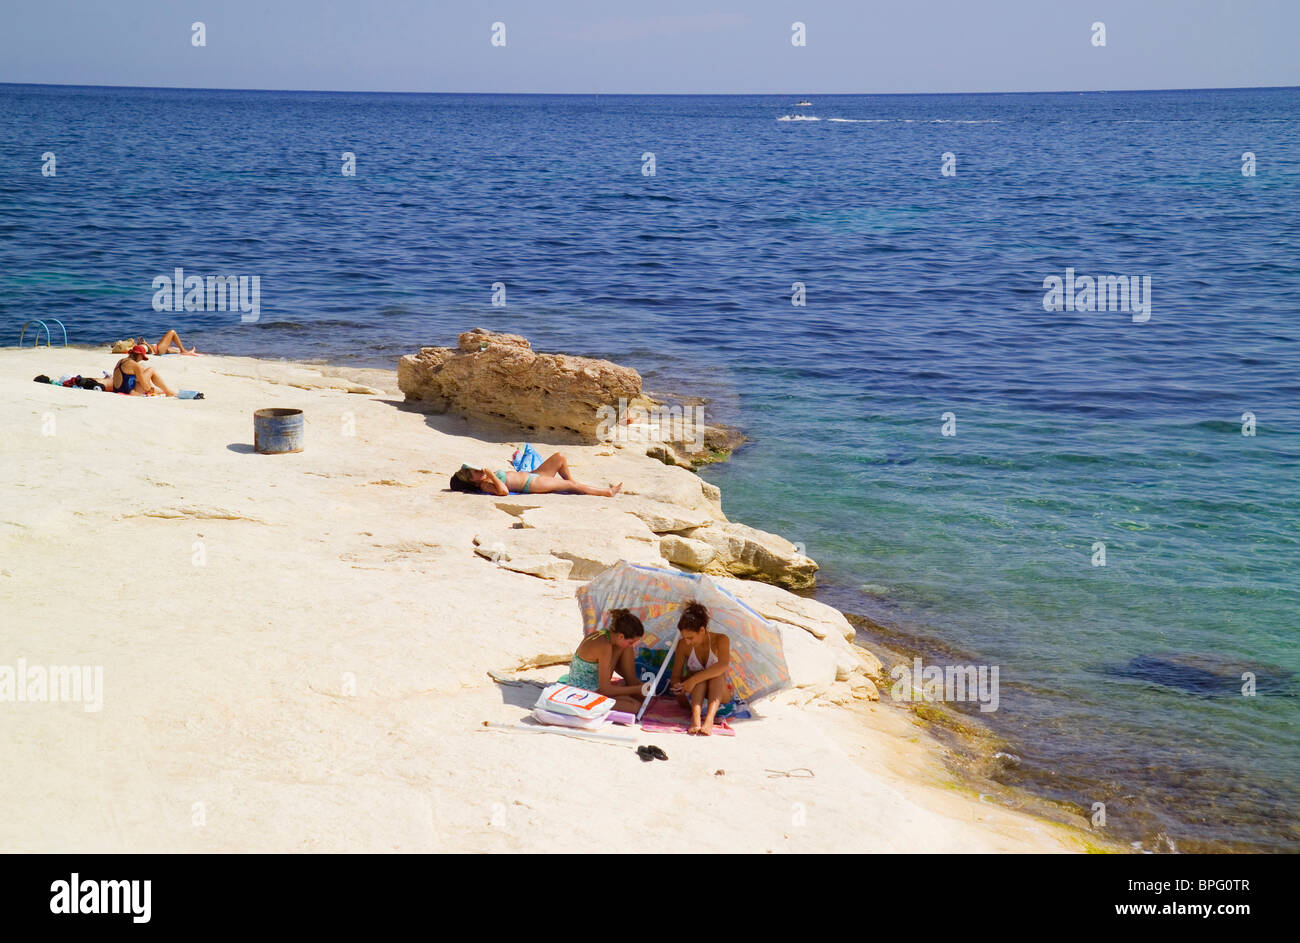 St Thomas's Bay, Marsascala, Malta Stock Photo